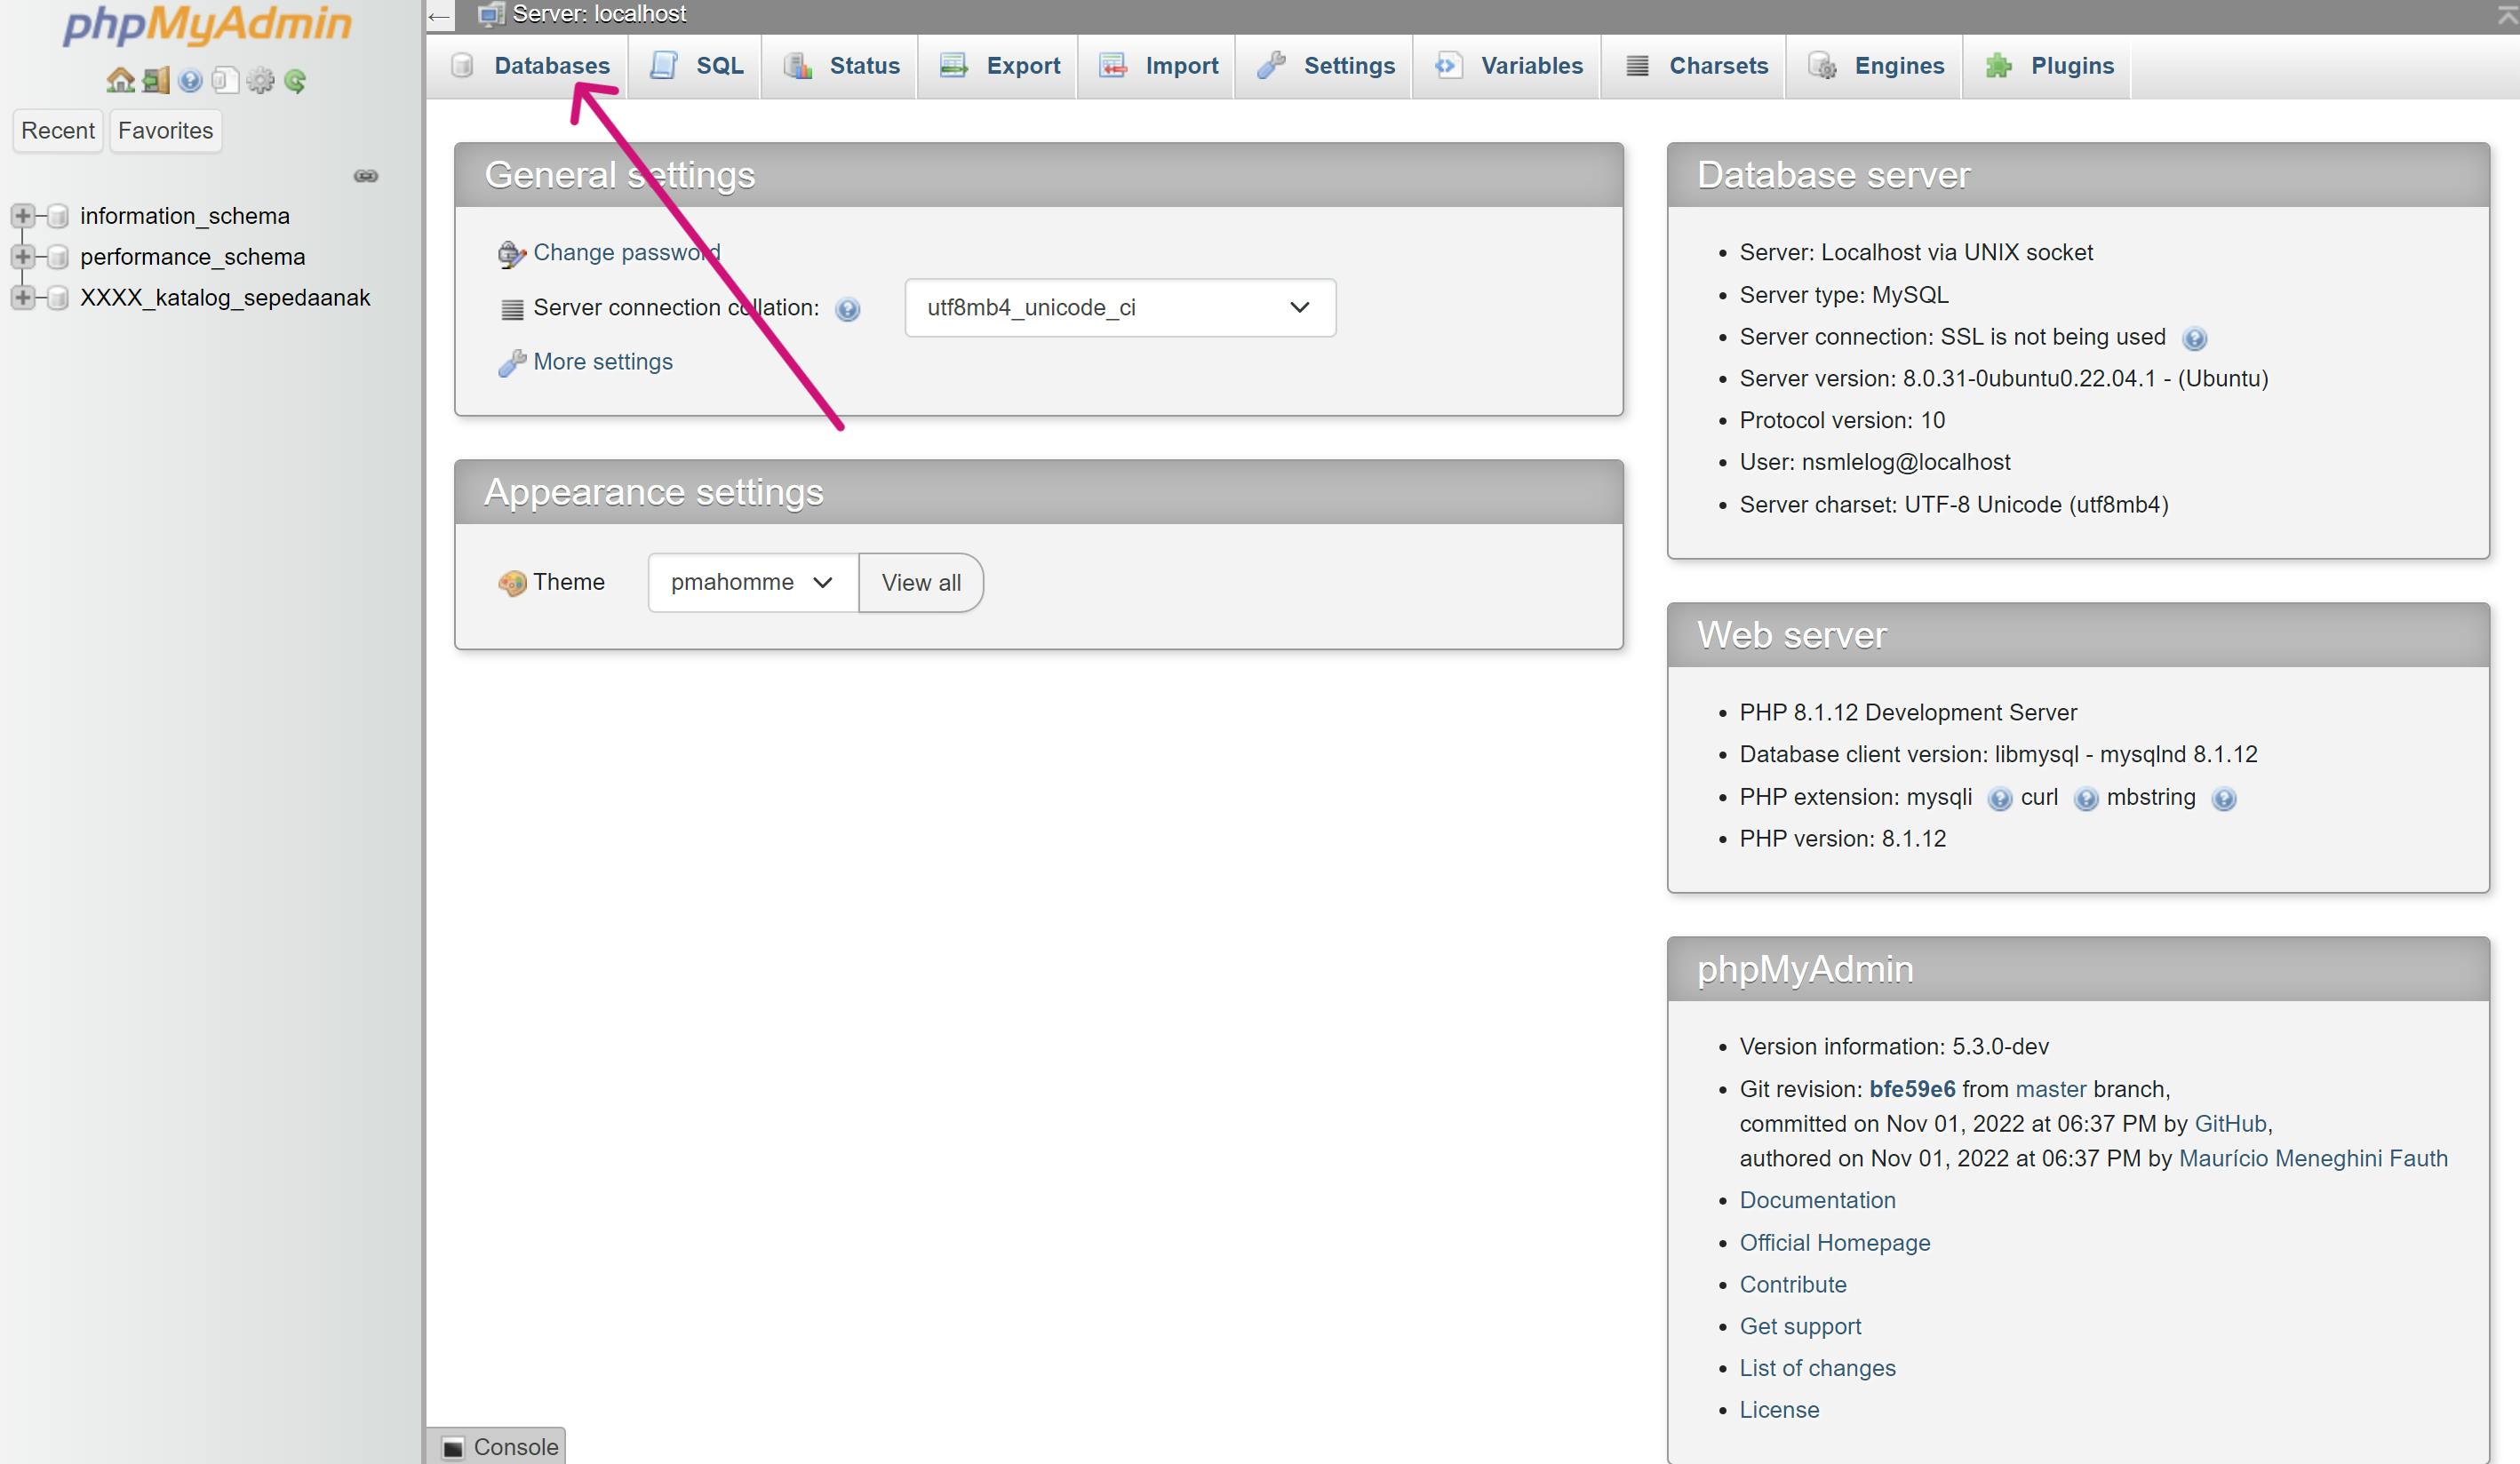 Klik Databases pada top bar halaman phpMyAdmin